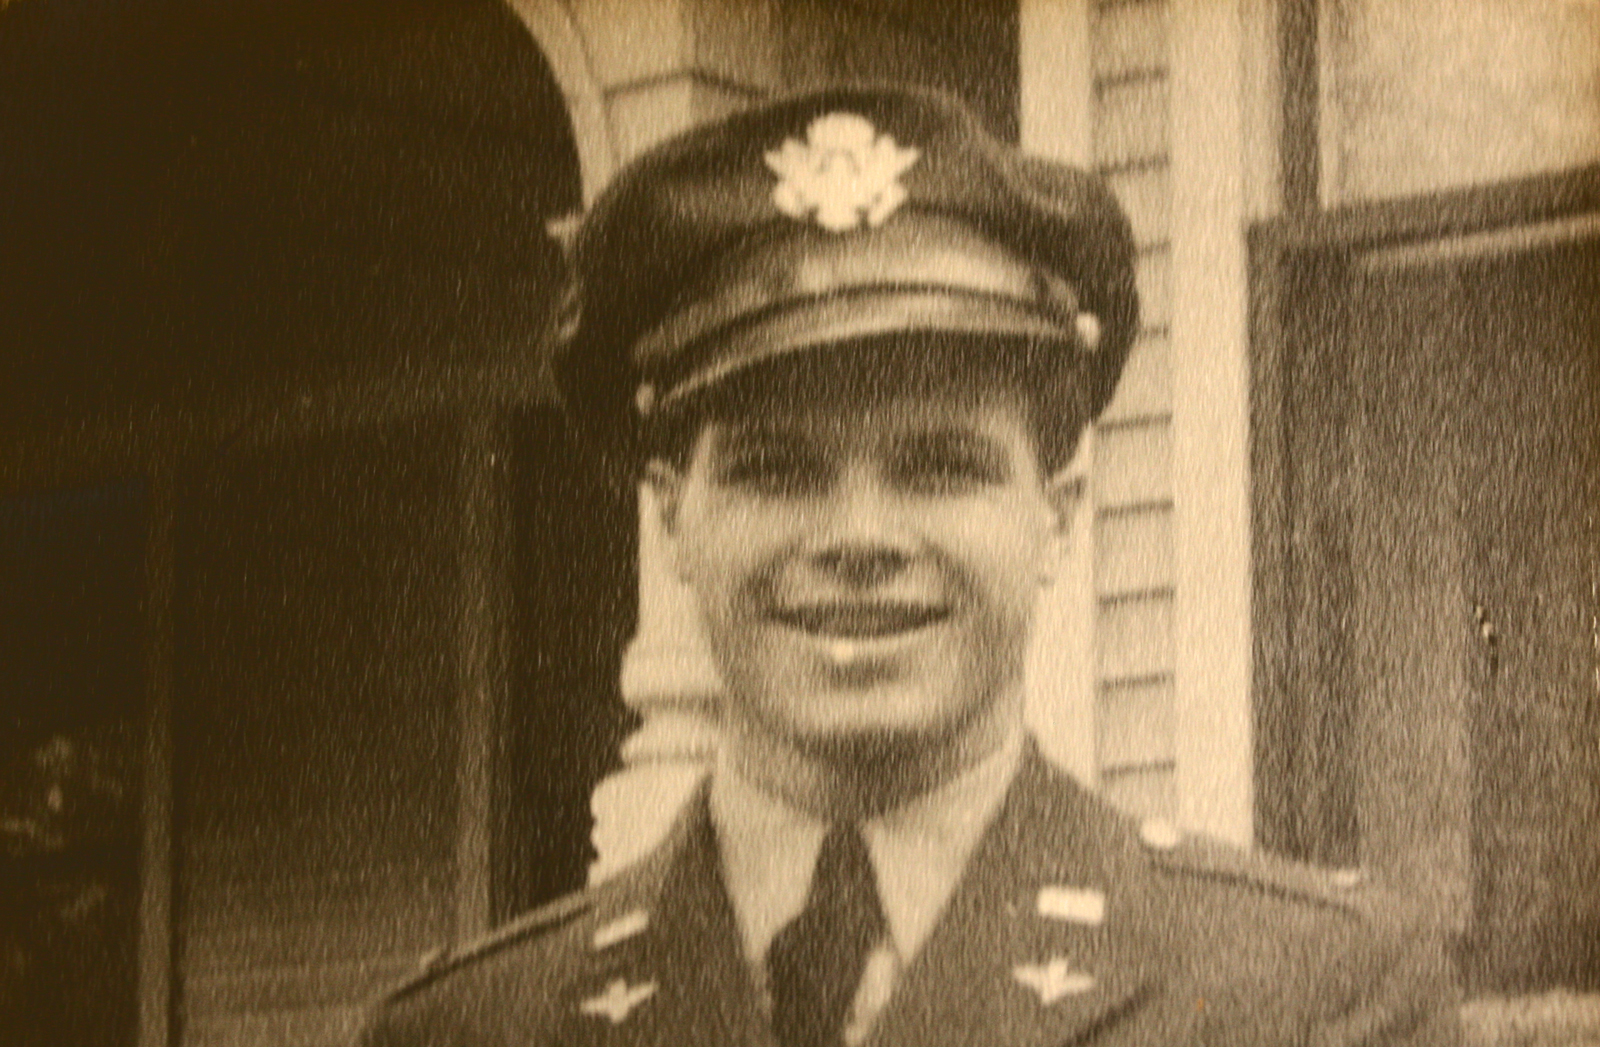 A portrait of a World War 2 airman.